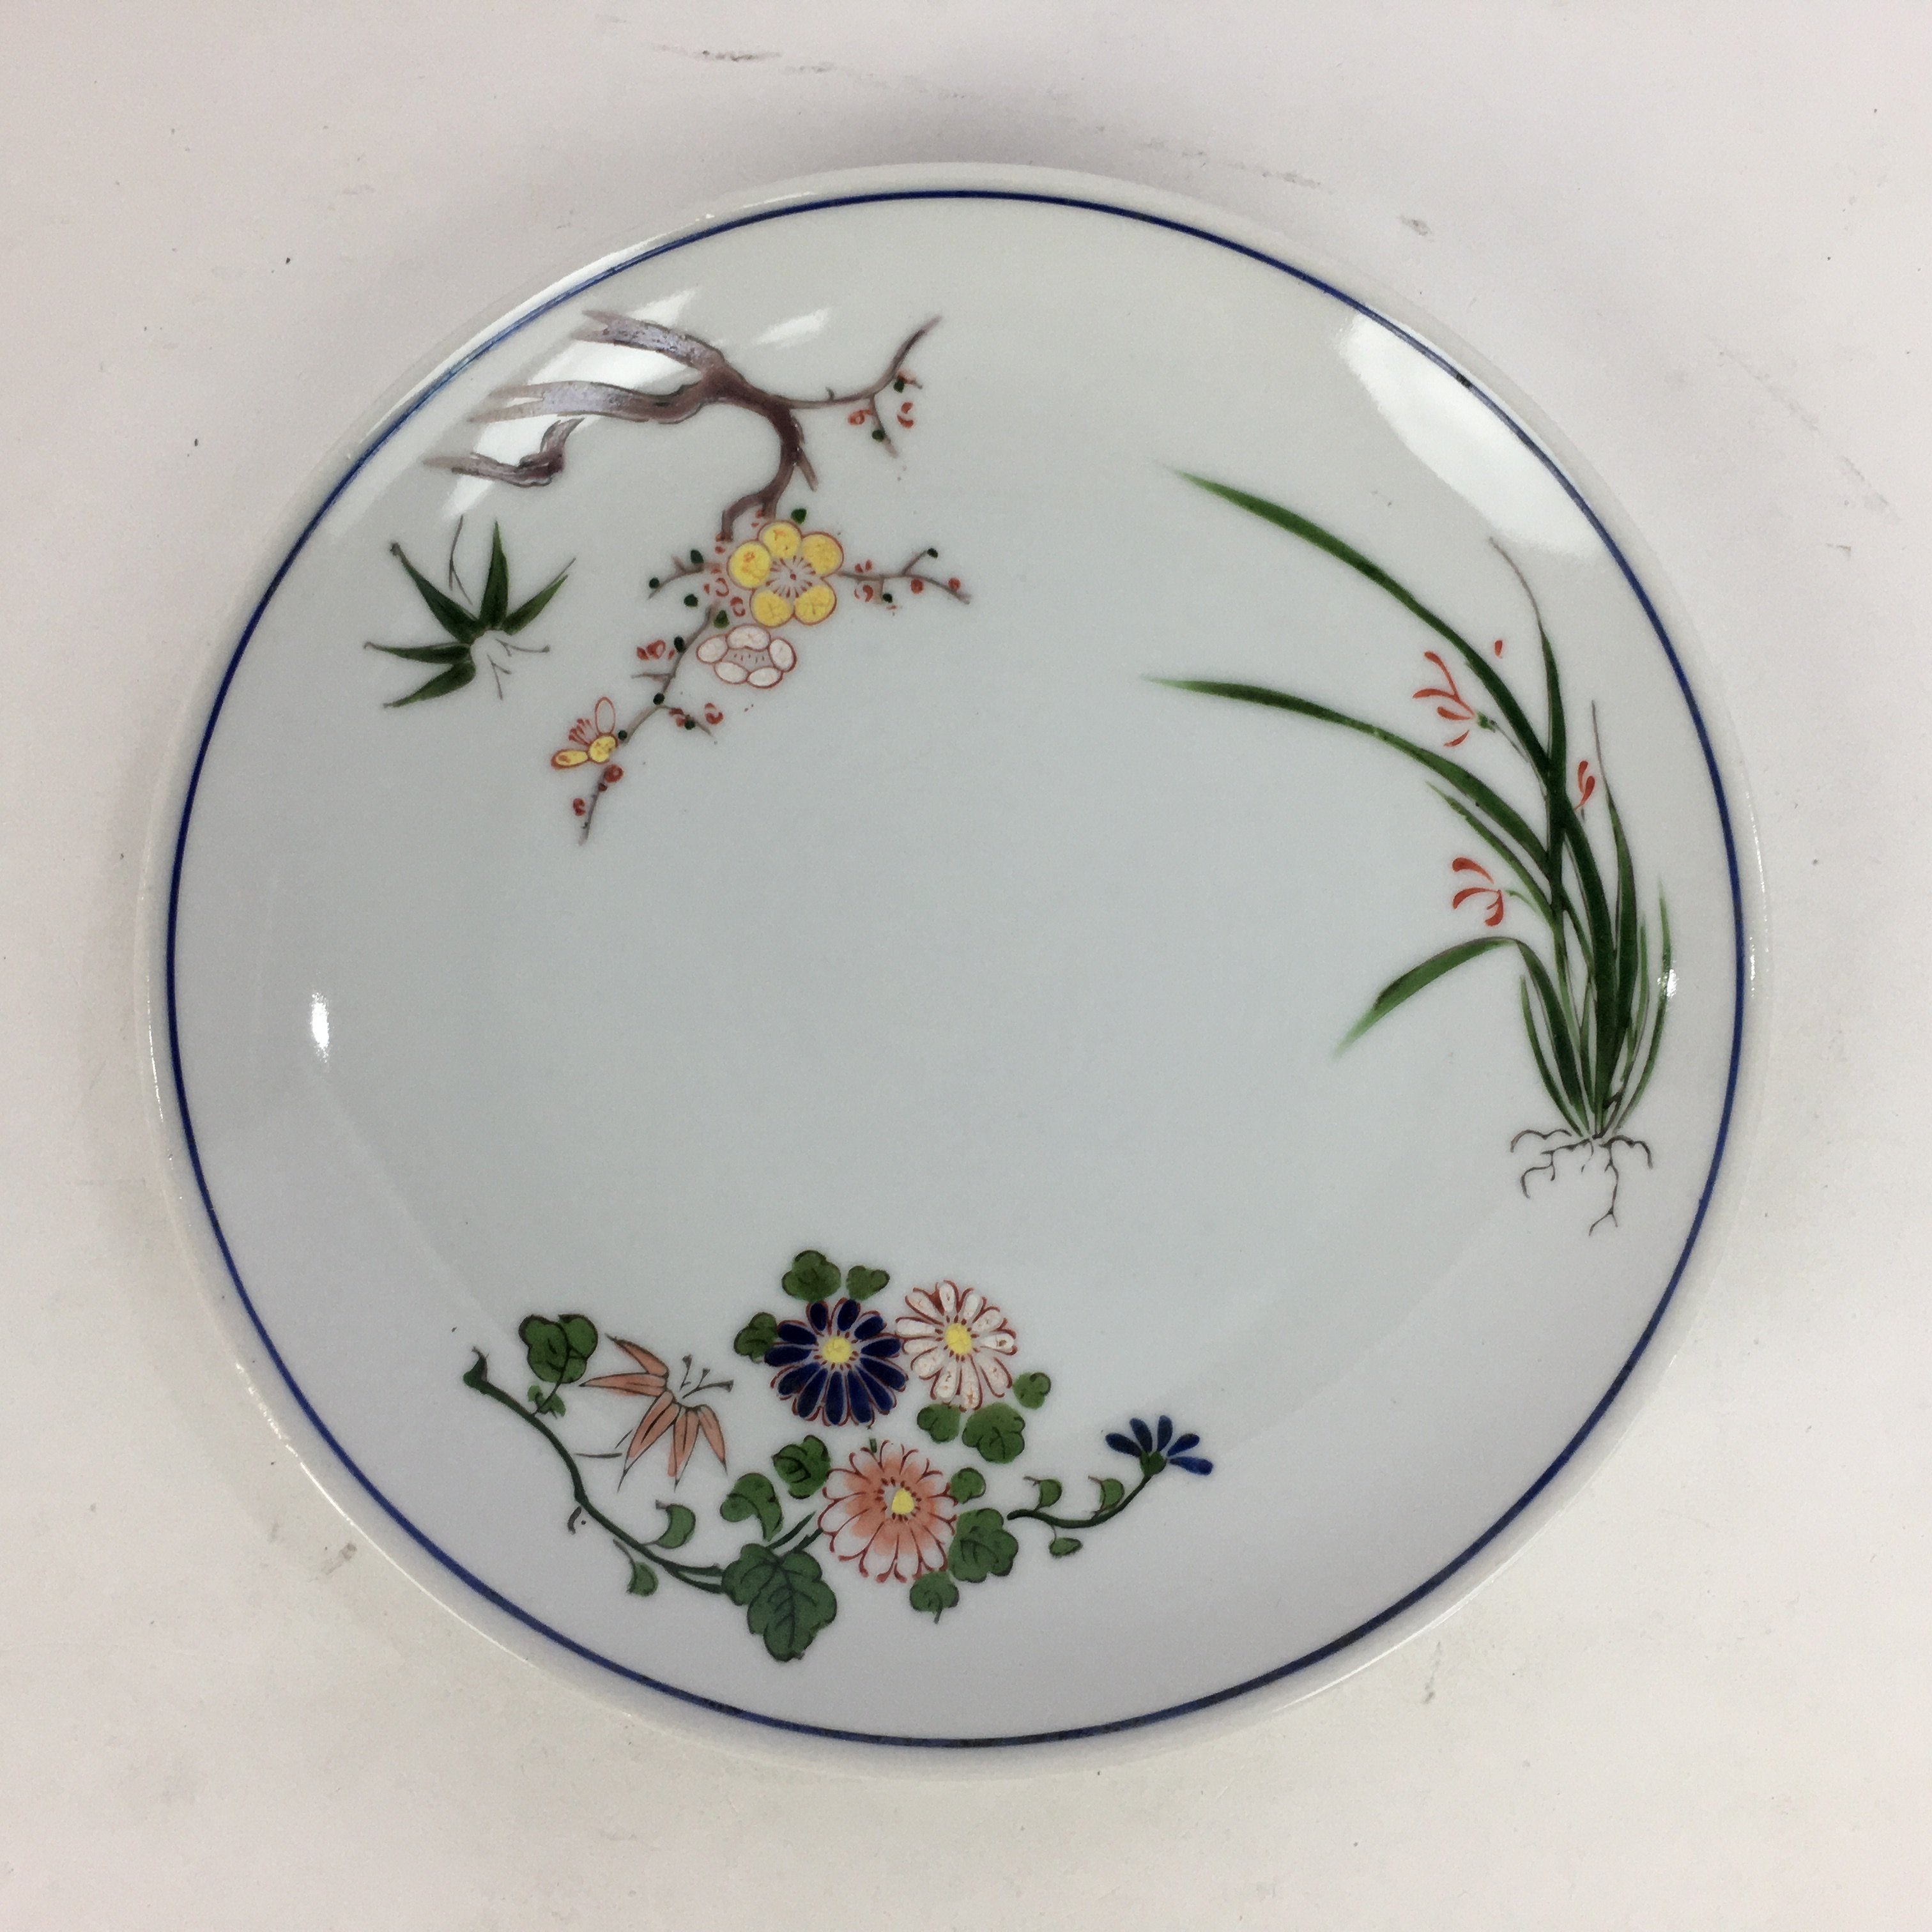 Japanese Porcelain Arita Ware Small Plate Kozara Vtg Round Flower Pattern PP656